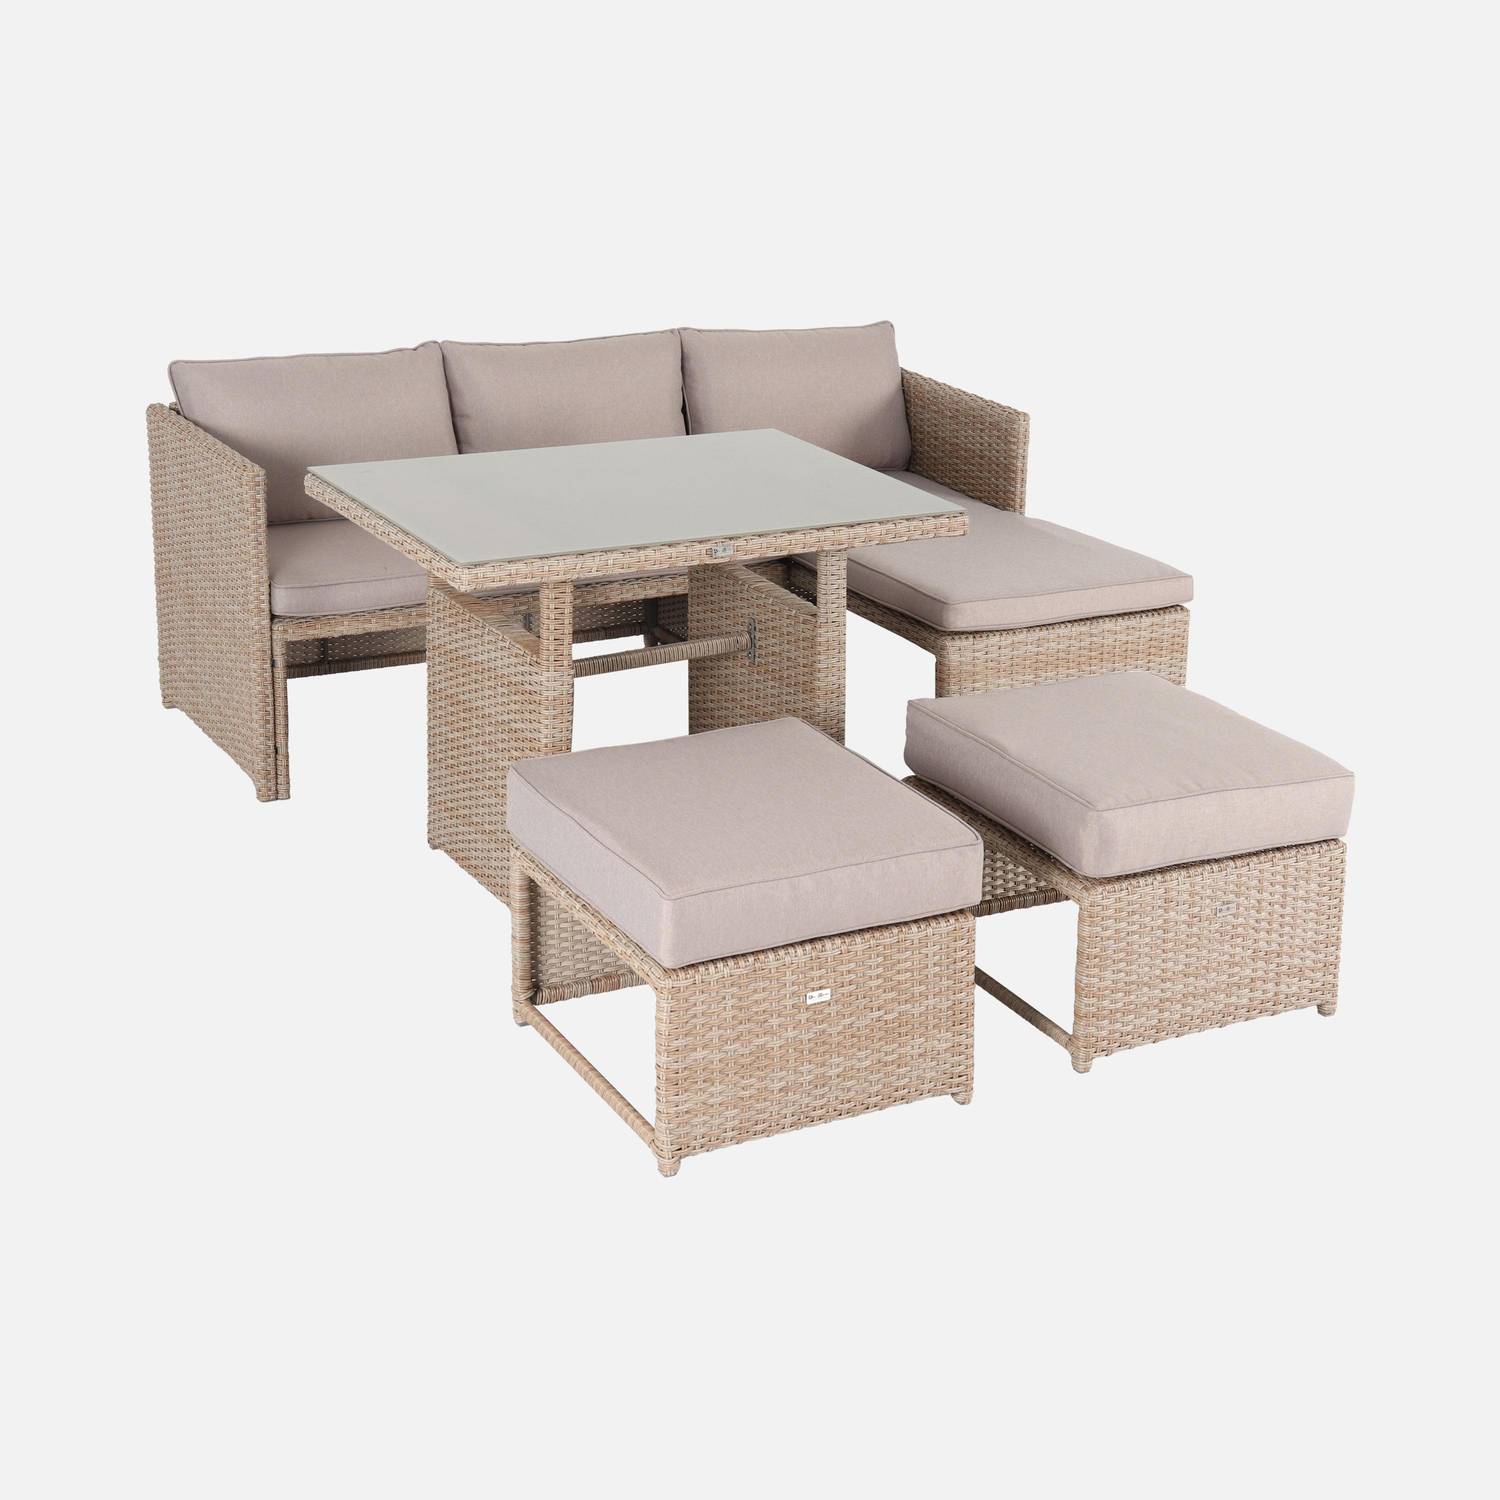 Conjunto de muebles de jardín de 6 plazas - Reggiano - Resina natural, cojines beige, mesa de jardín con sofá, chaise longue y 2 pufs incorporados Photo3